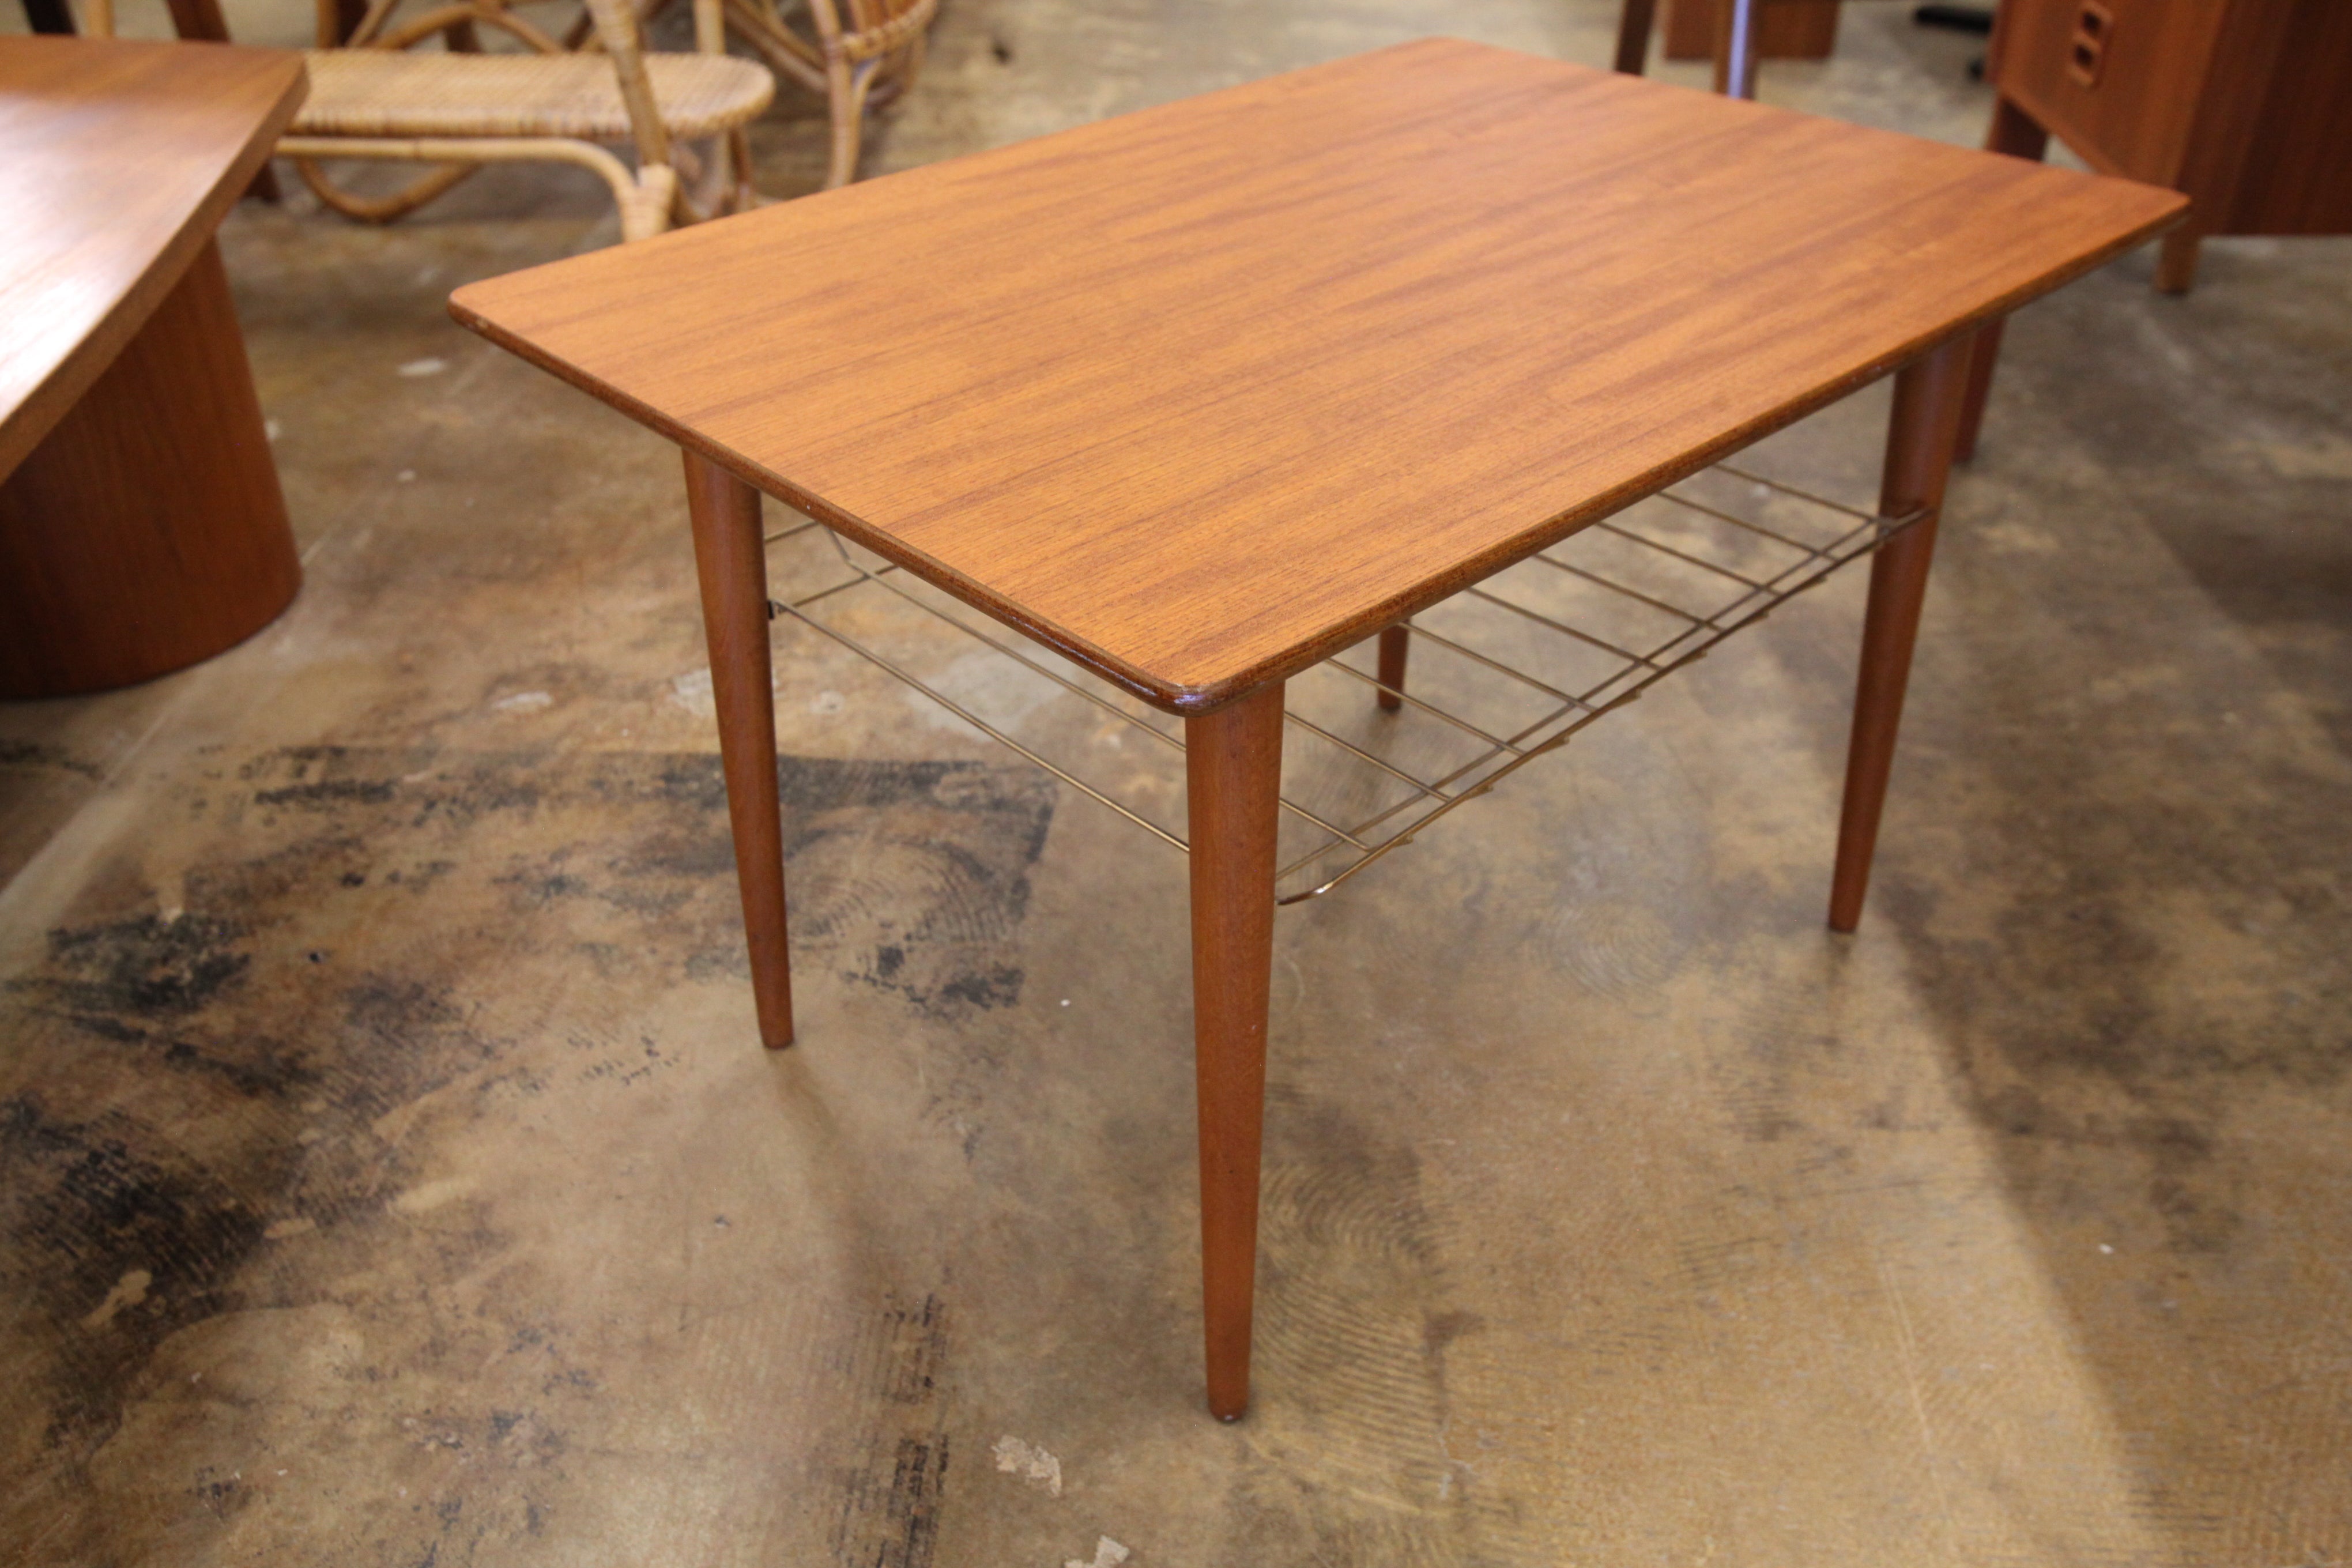 Vintage Teak Side Table w/ Wire Shelf Below (27.5"W x 19.5"D x 17.5"H)